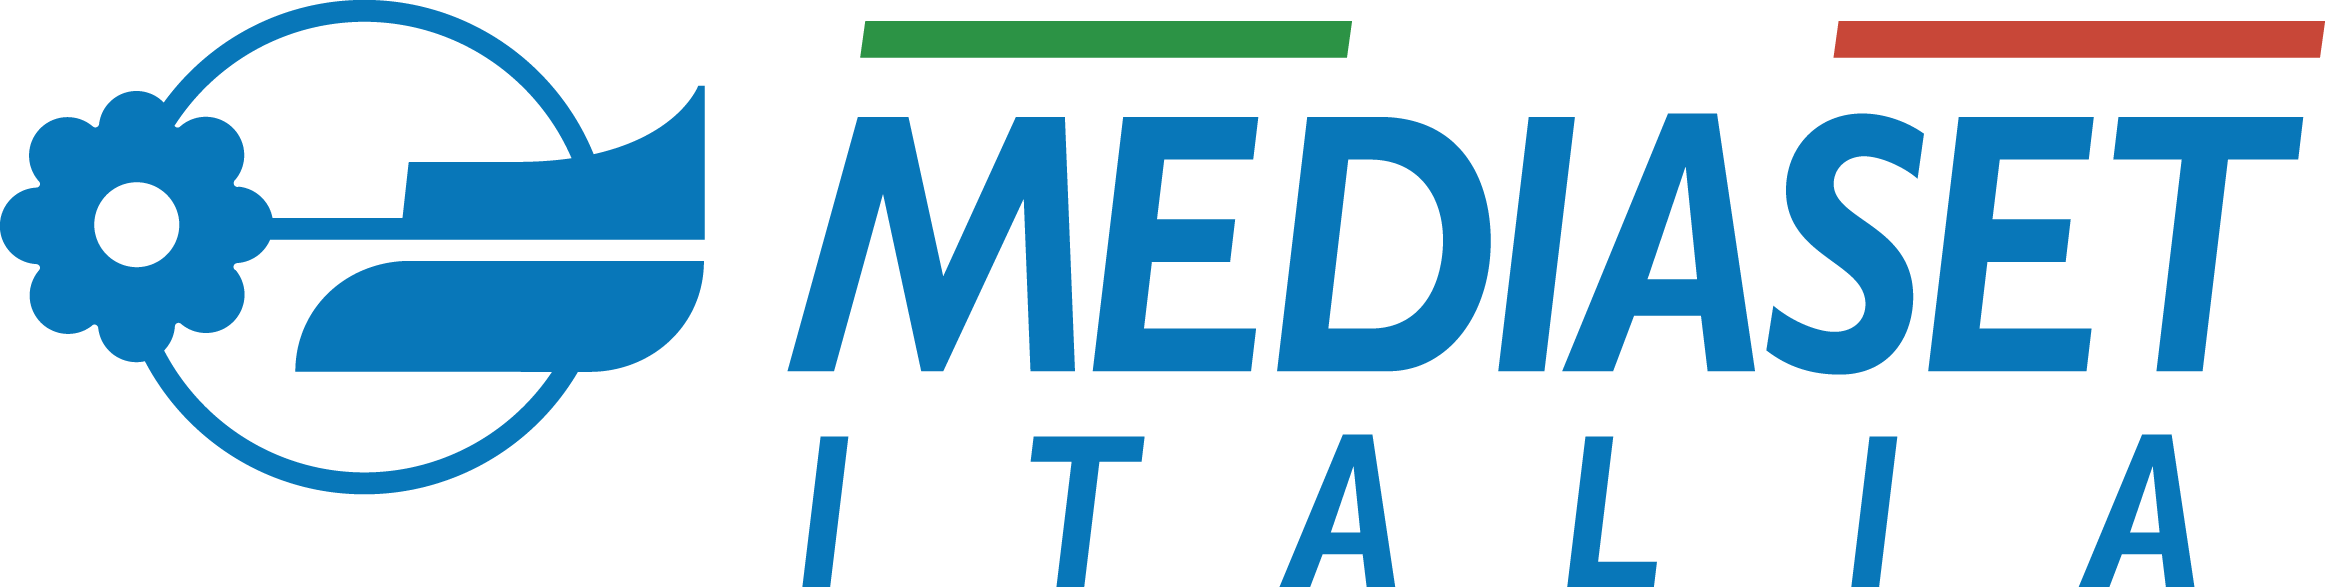 Mediaset Italia Logo